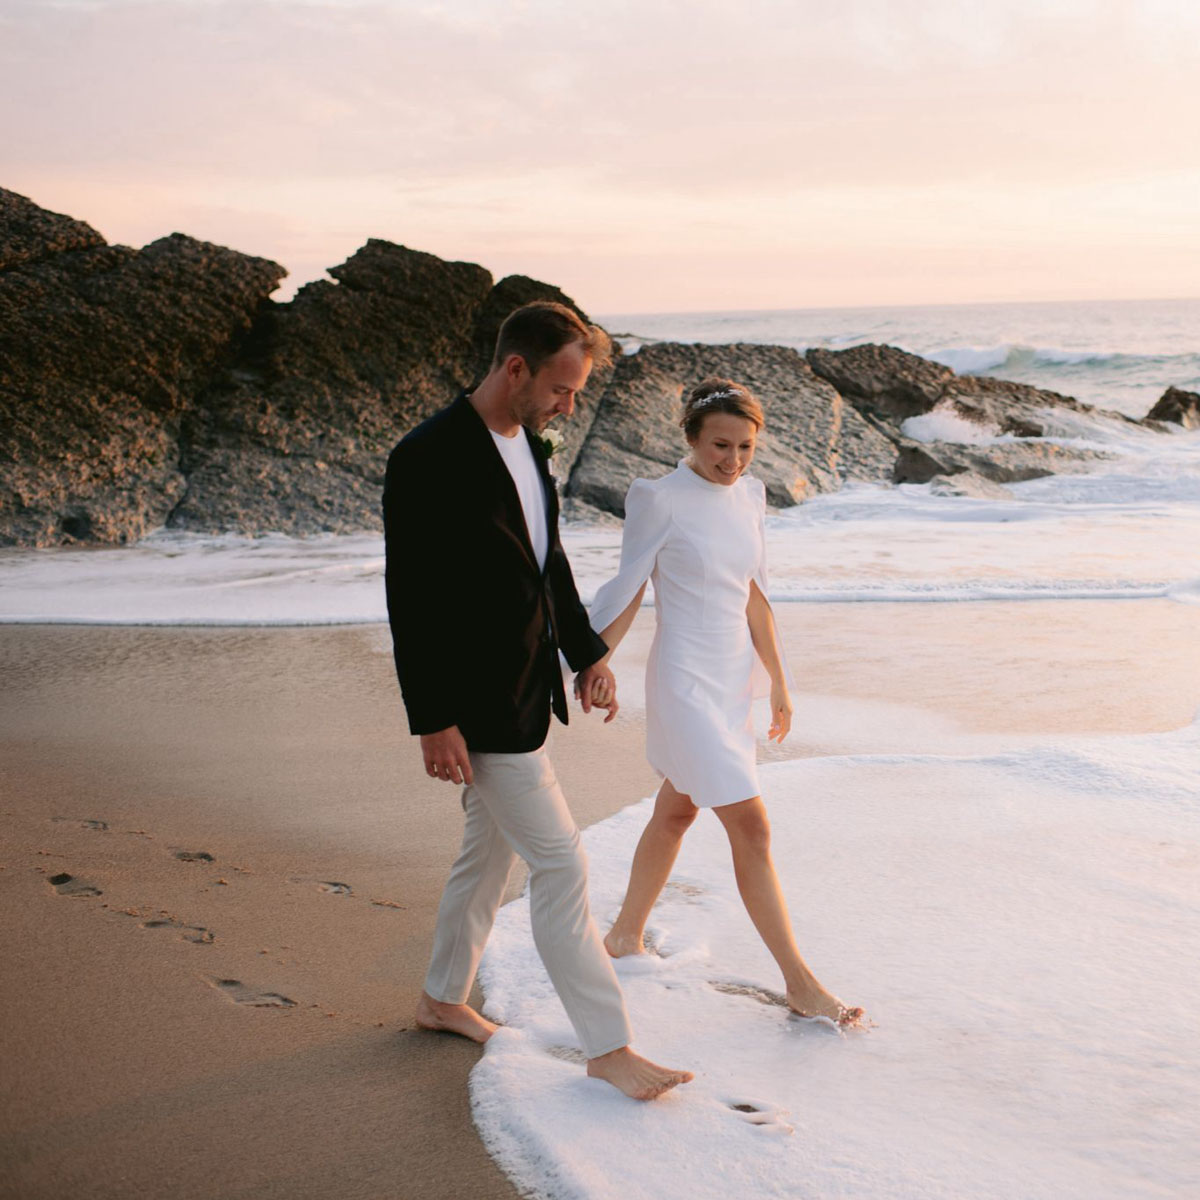 beach walk for their wedding session